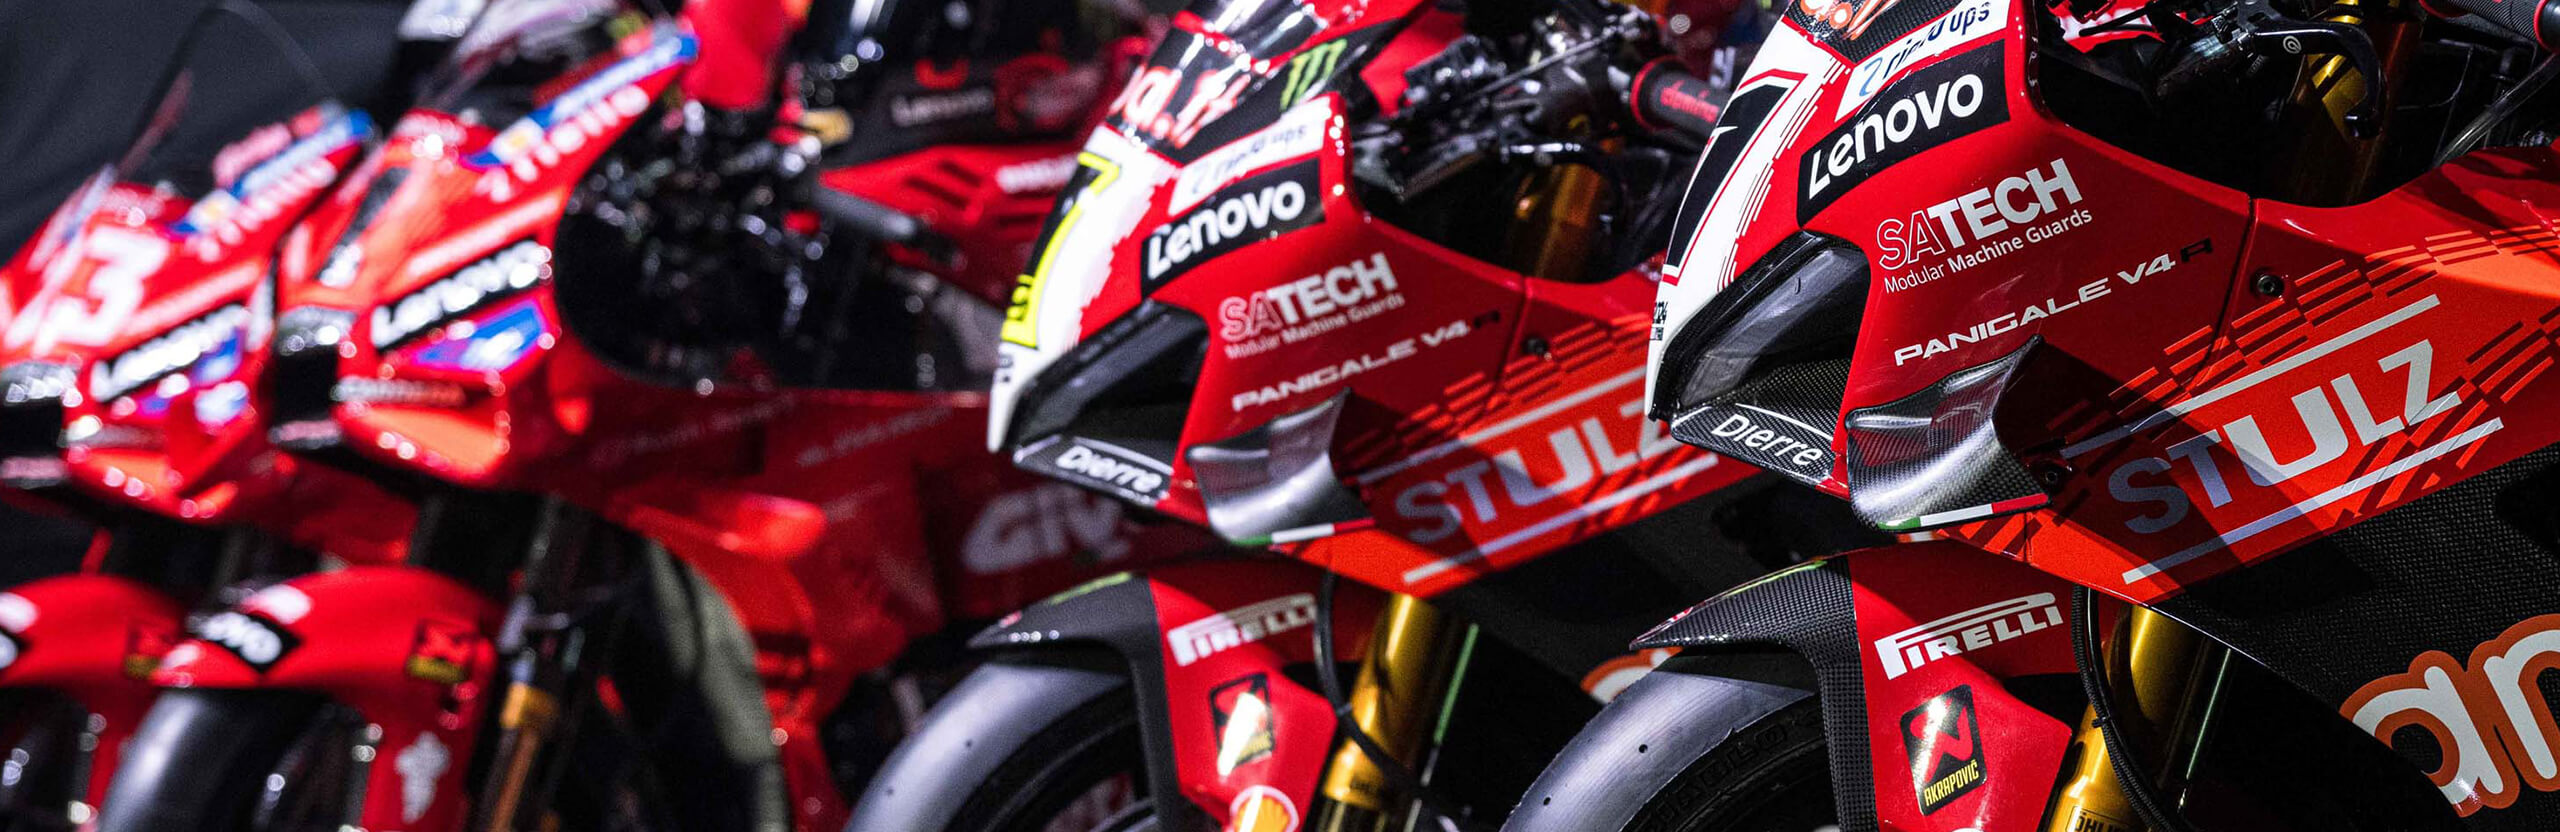 Inquadratura delle moto Ducati con il logo Satech come uno degli Sponsor Ufficiali